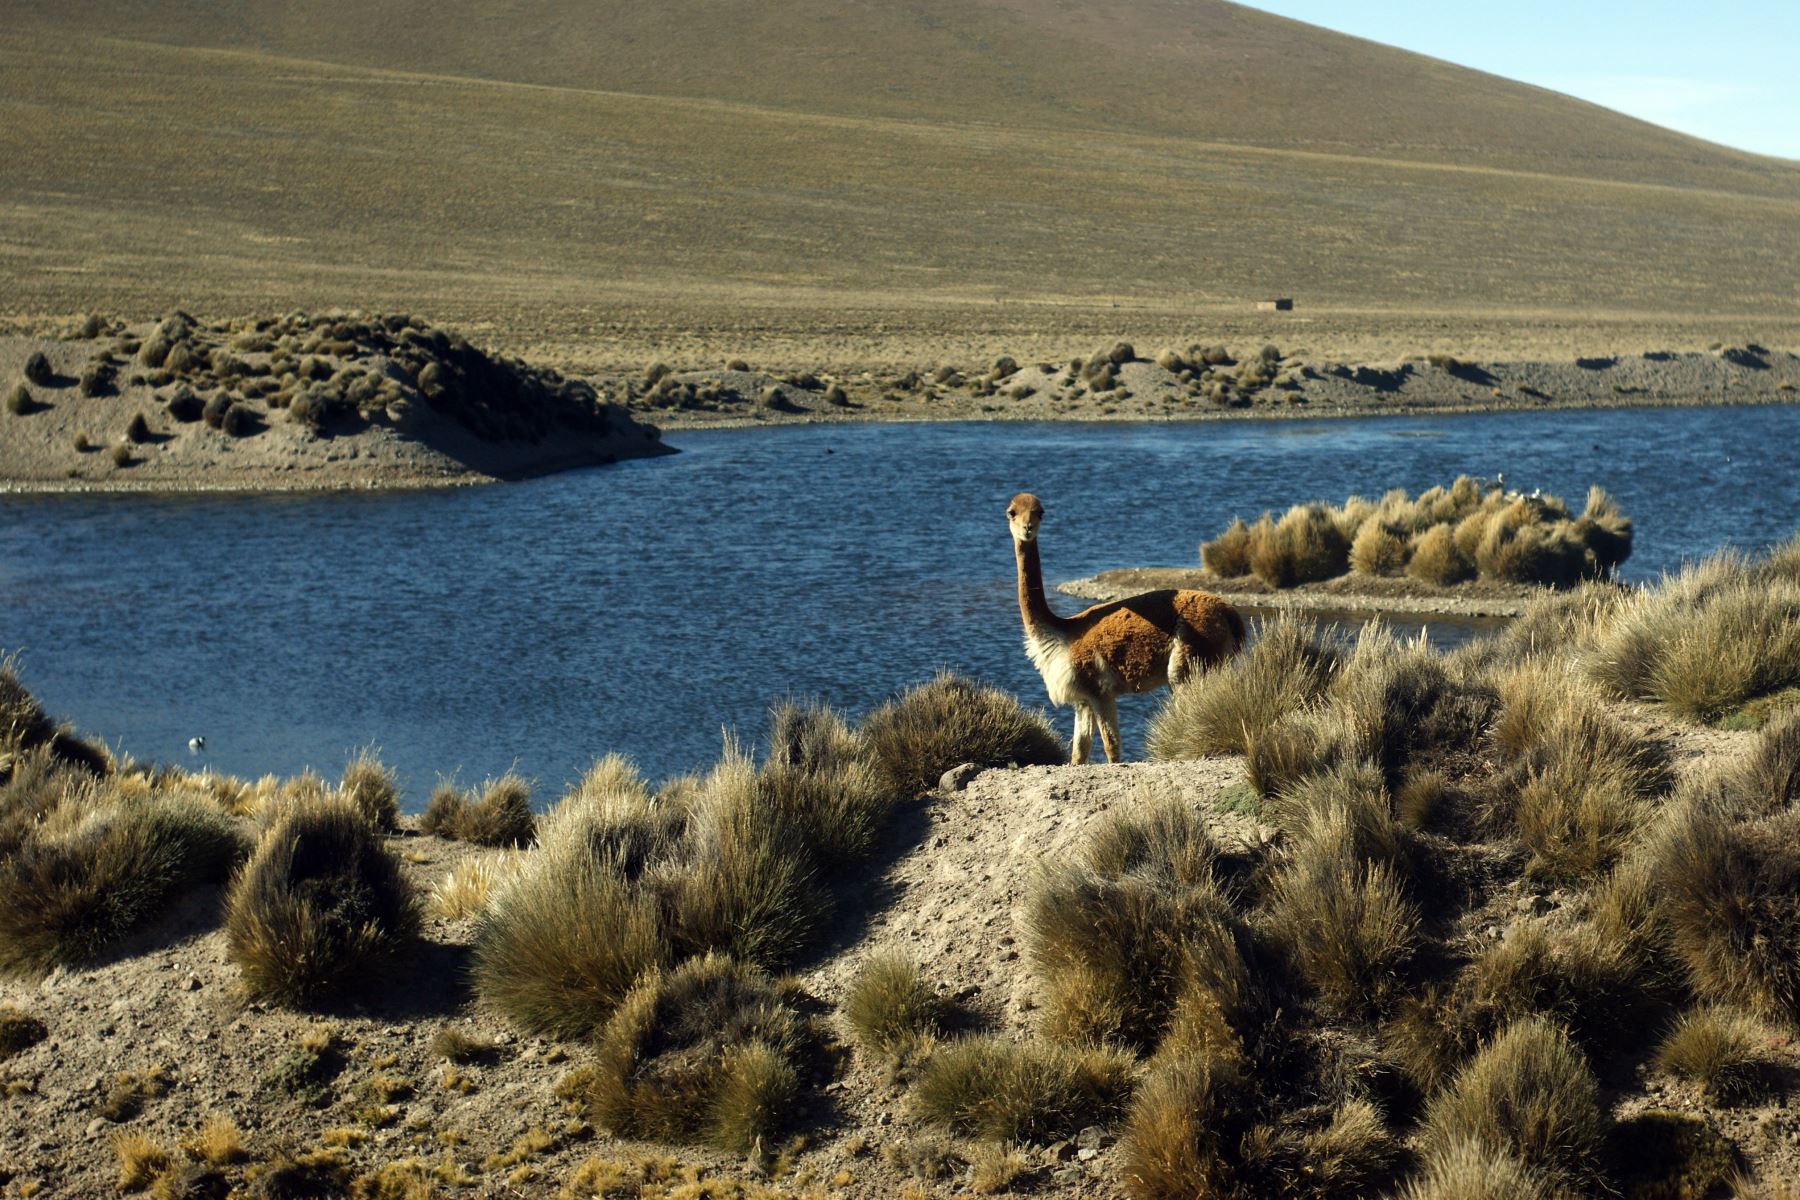 Pobladores del distrito altoandino de Lari denunciaron caza furtiva de vicuñas en Arequipa. El caso fue confirmado por la Policía y el Serfor. ANDINA/Archivo